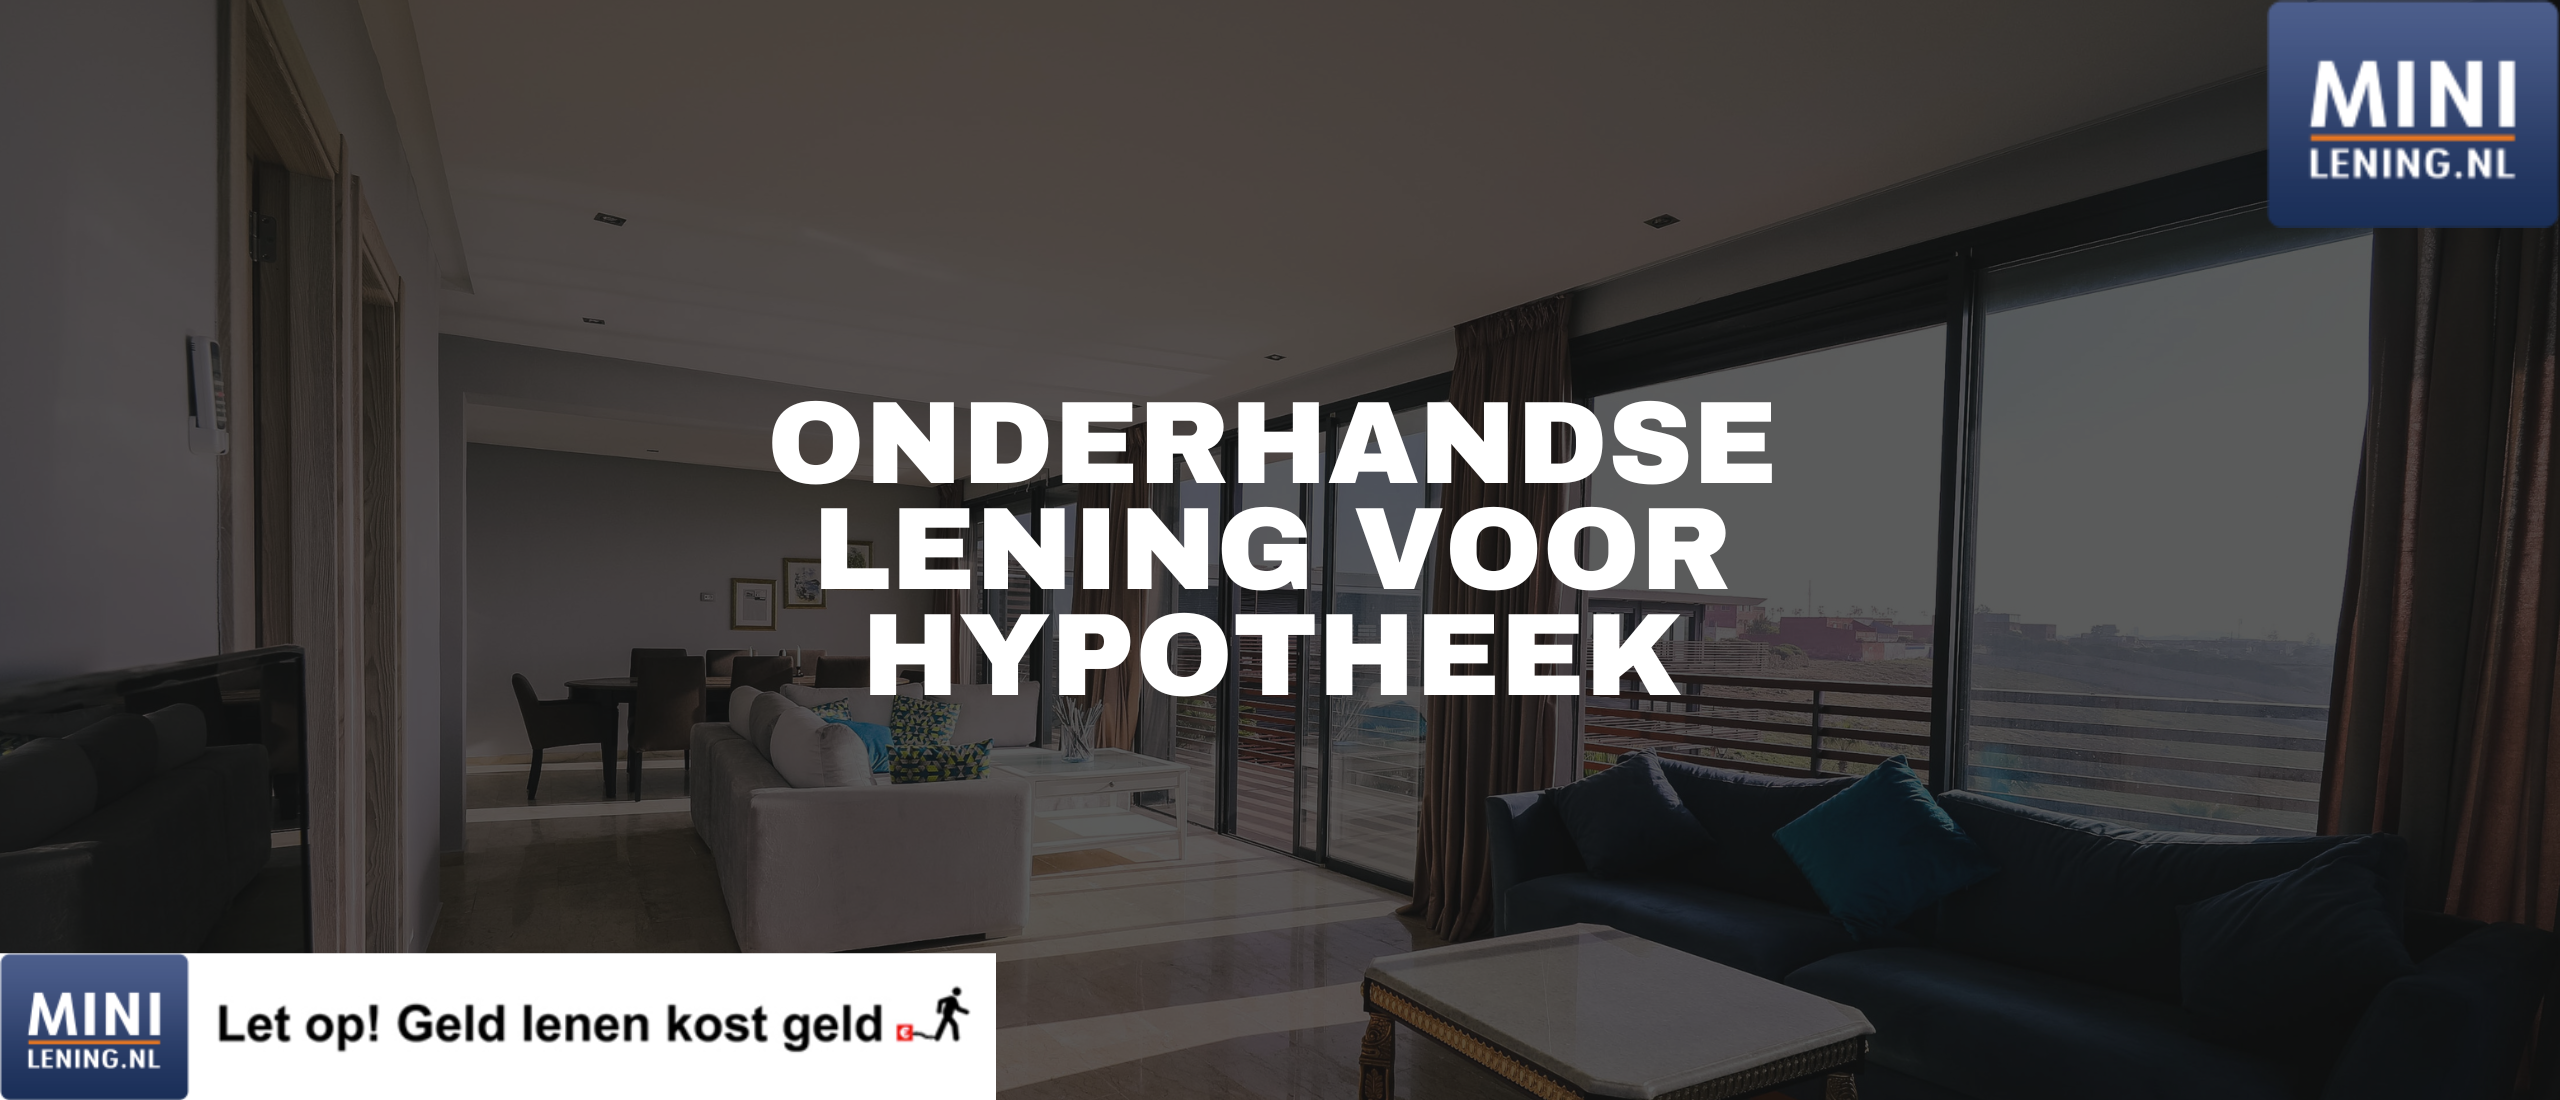 Onderhandse lening voor hypotheek afsluiten | Minilening.nl